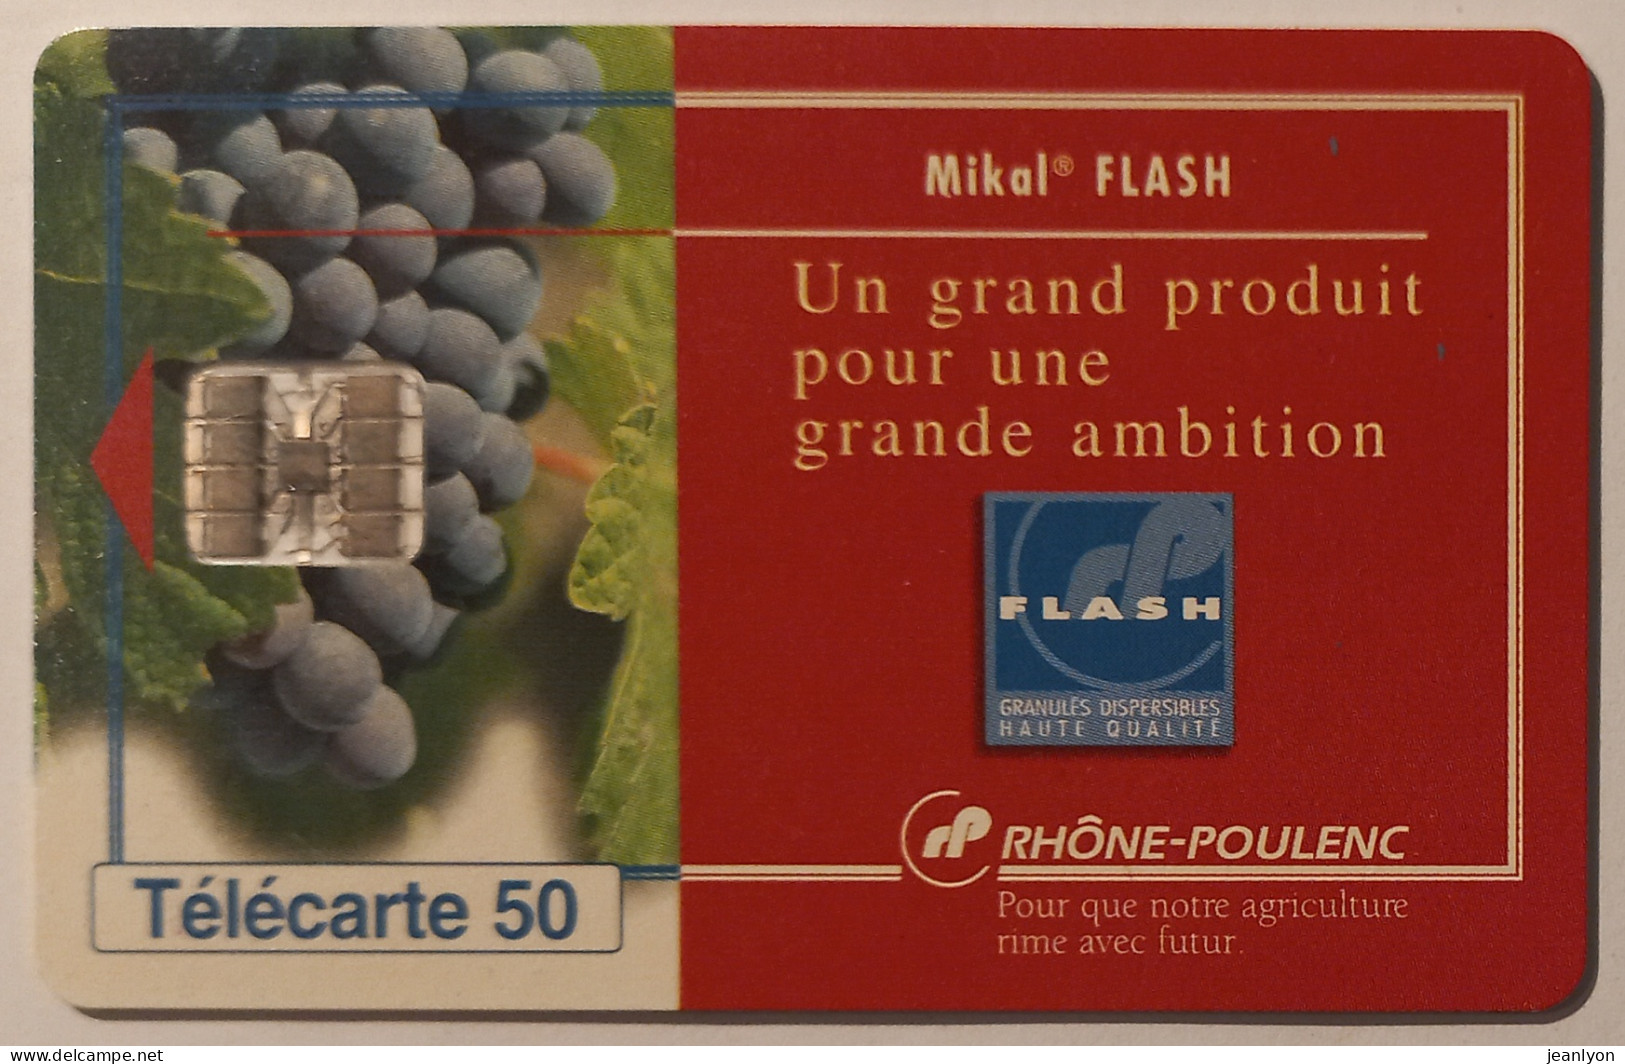 RHONE POULENC - MIKAL FLASH - Raisin / Vigne / Vin - Télécarte 50 Privée Publique - 50 Units